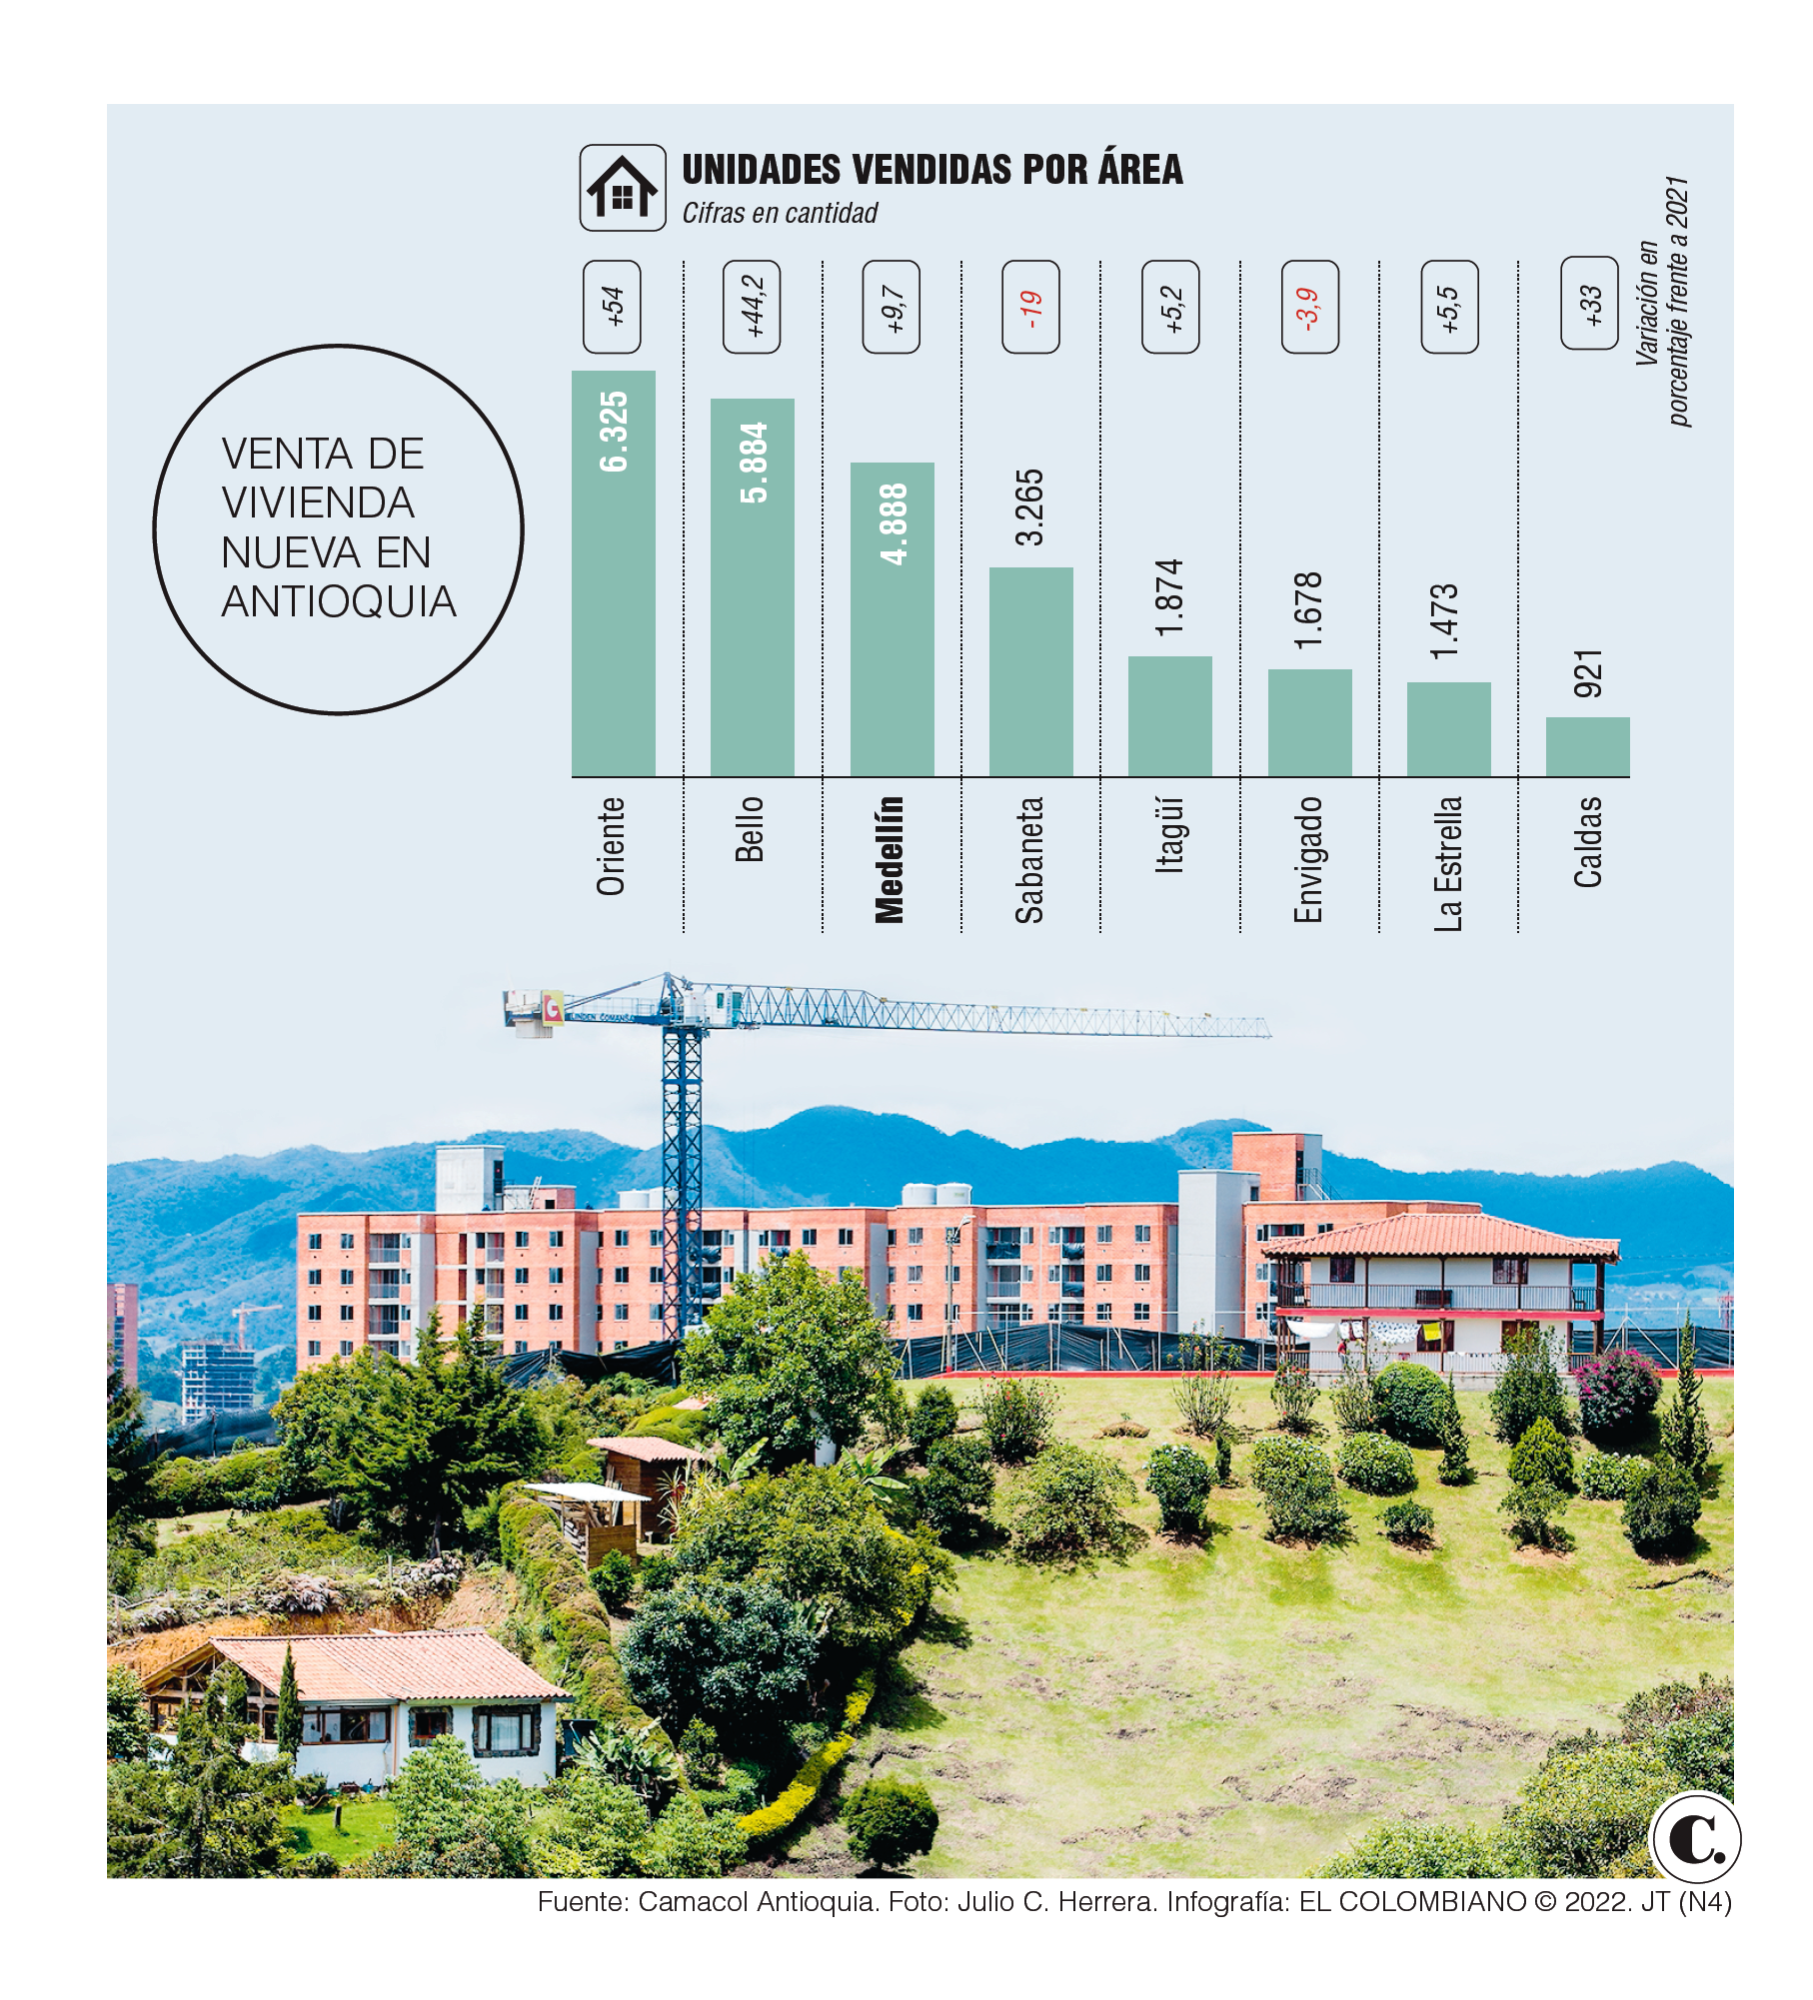 Oriente cercano se cotizó como el mejor lugar en venta de vivienda en Antioquia